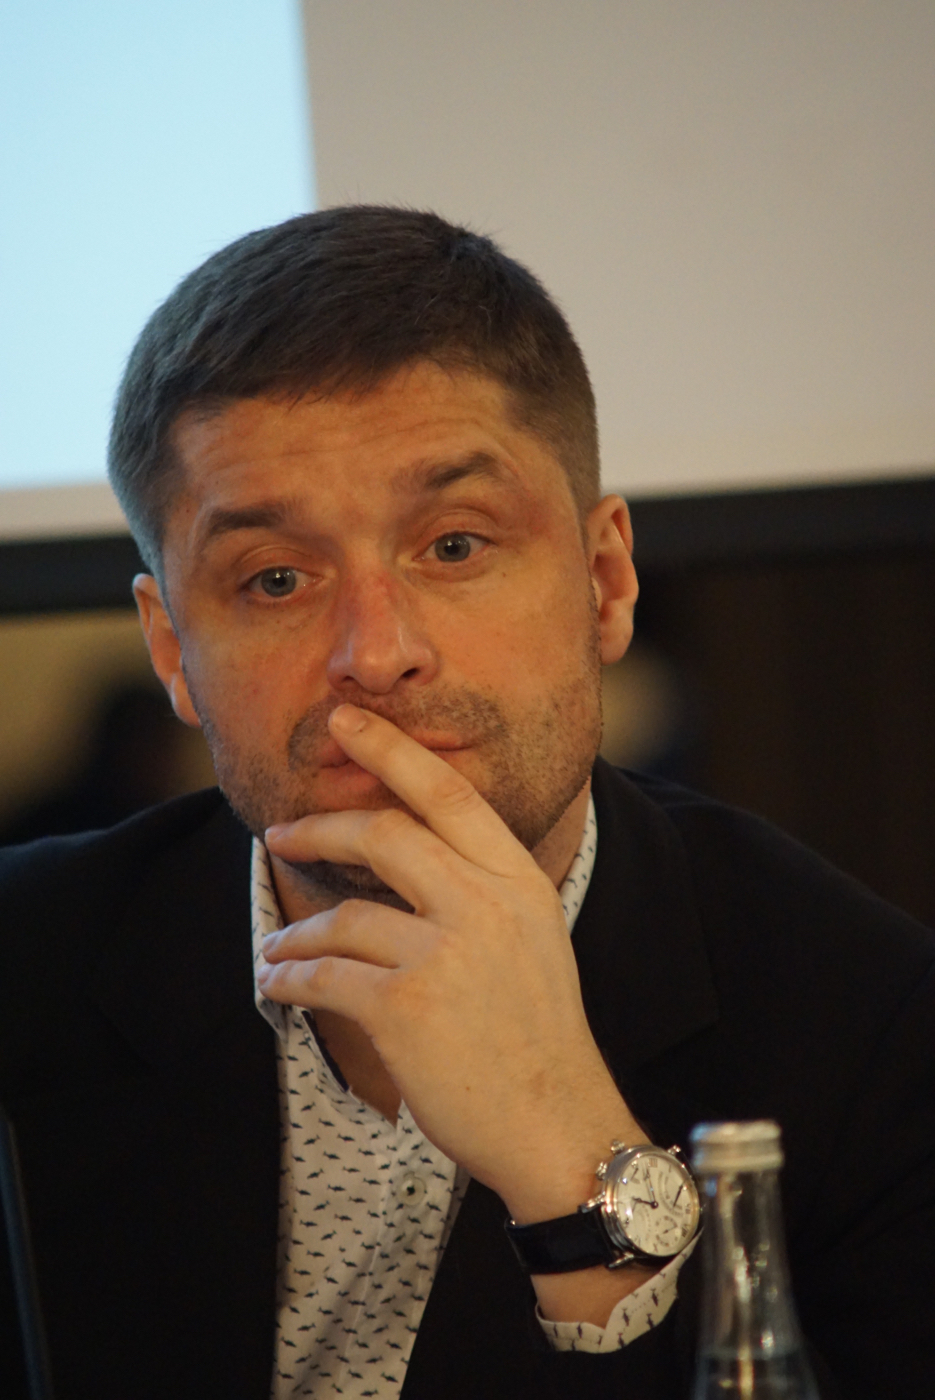 Балуев Андрей, руководитель управления экономической безопасности Северо-Западного регионального центра